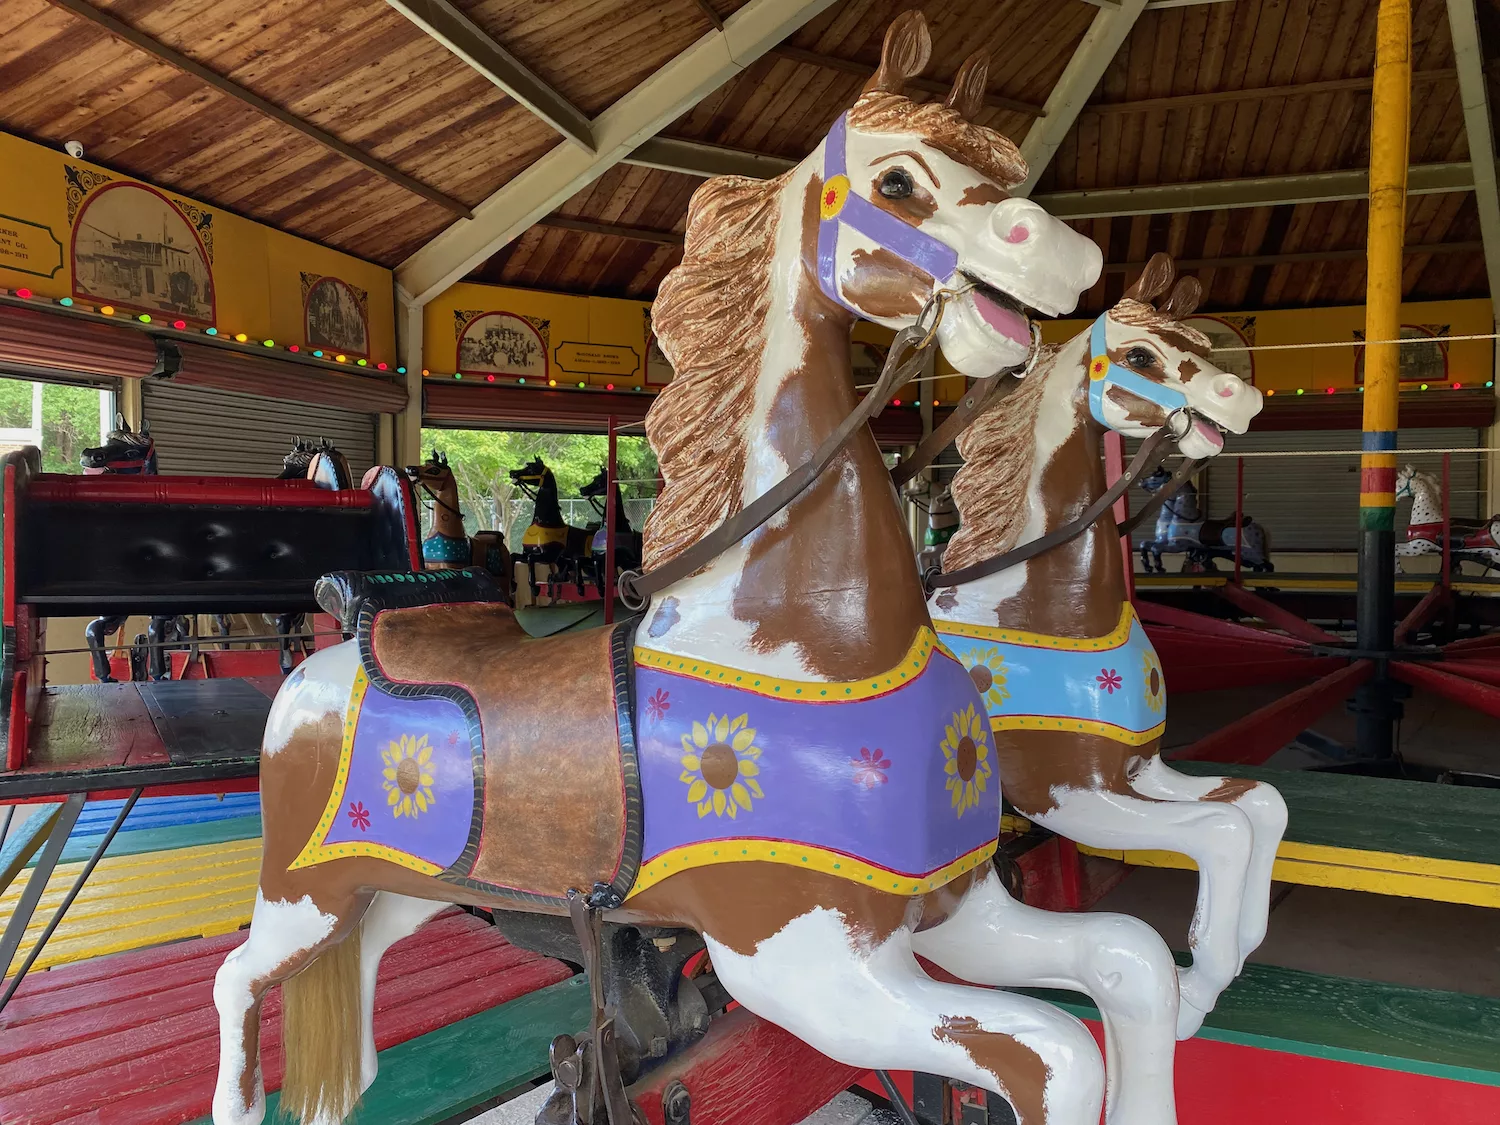 Carousel horses at C.W. Parker Carousel at Dickinson County Heritage Center in Abilene, Kansas